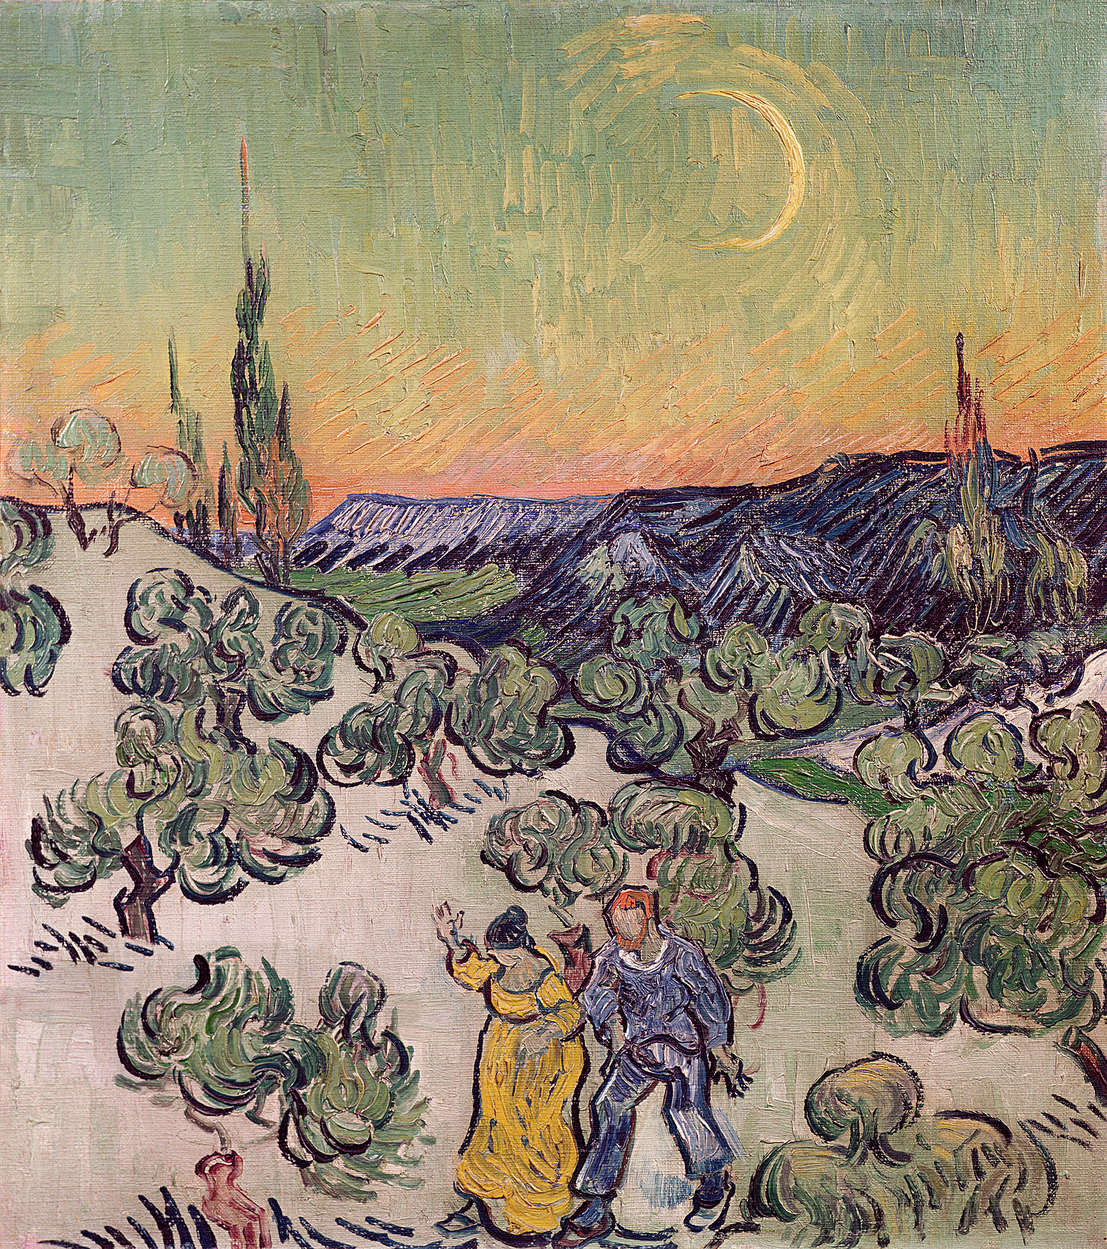             Fototapete "Landschaft mit Fabriken im Mondlicht" von Vincent van Gogh
        